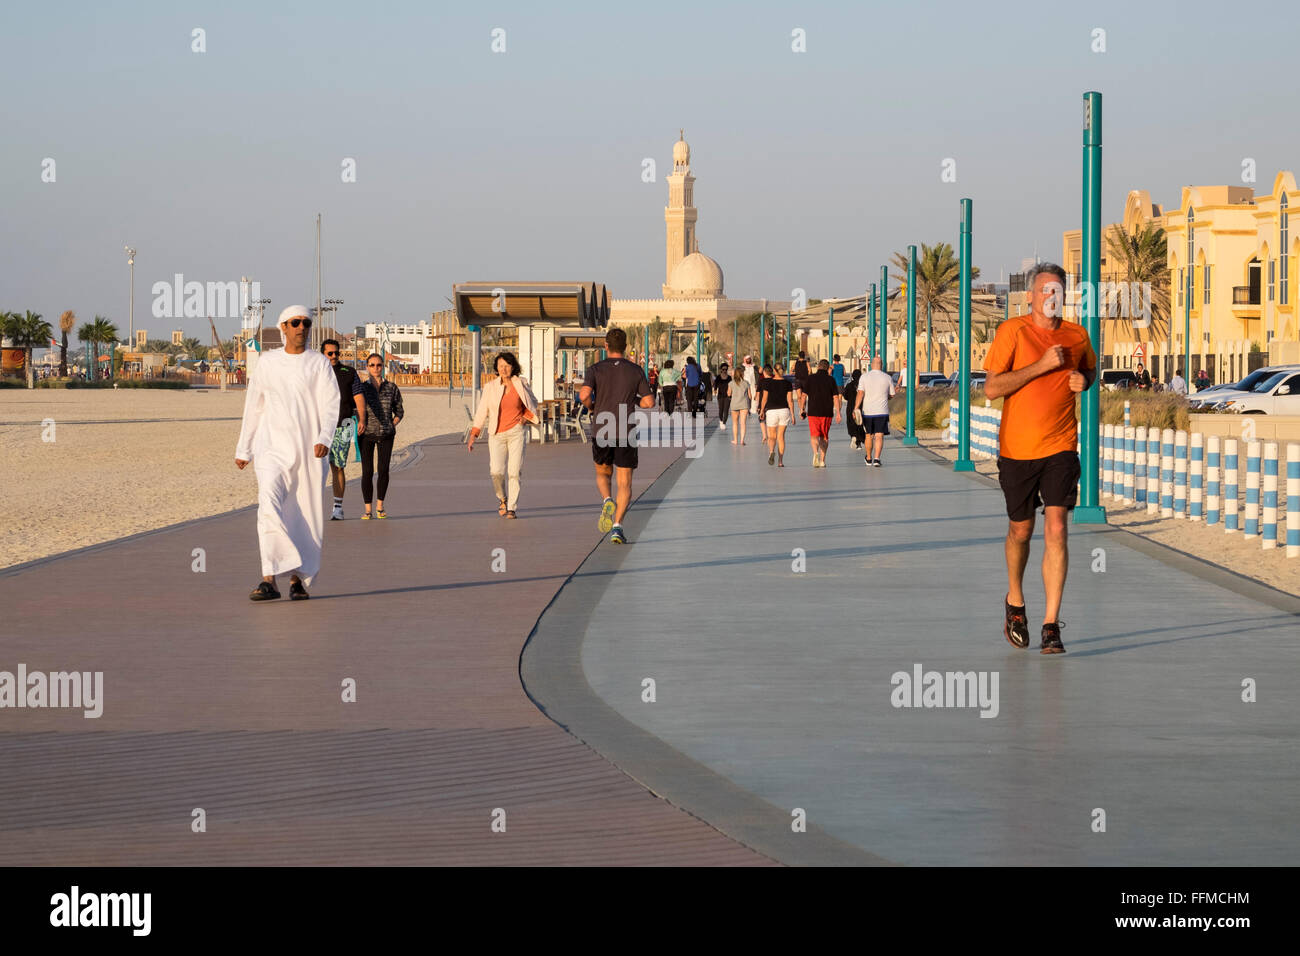 Viele Menschen mit neuen öffentlichen Promenade und Joggen zu verfolgen, am Strand in Dubai Vereinigte Arabische Emirate Stockfoto